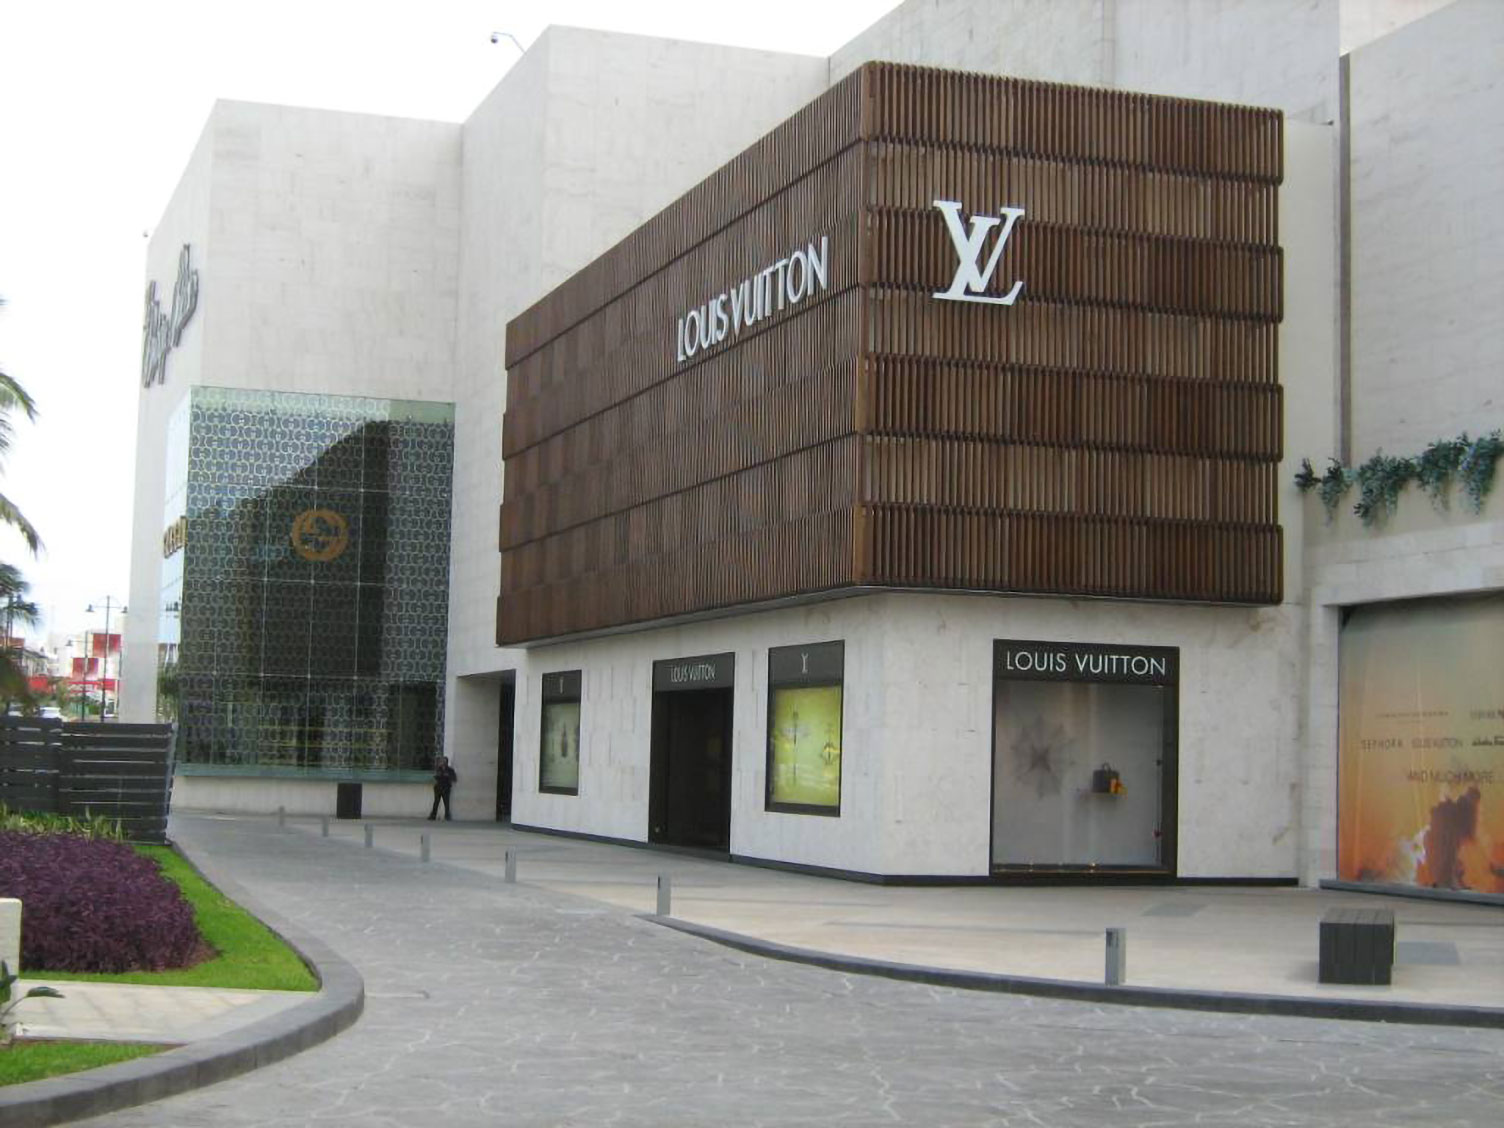 Louis200: Marca Louis Vuitton celebra su bicentenario - El Sol de